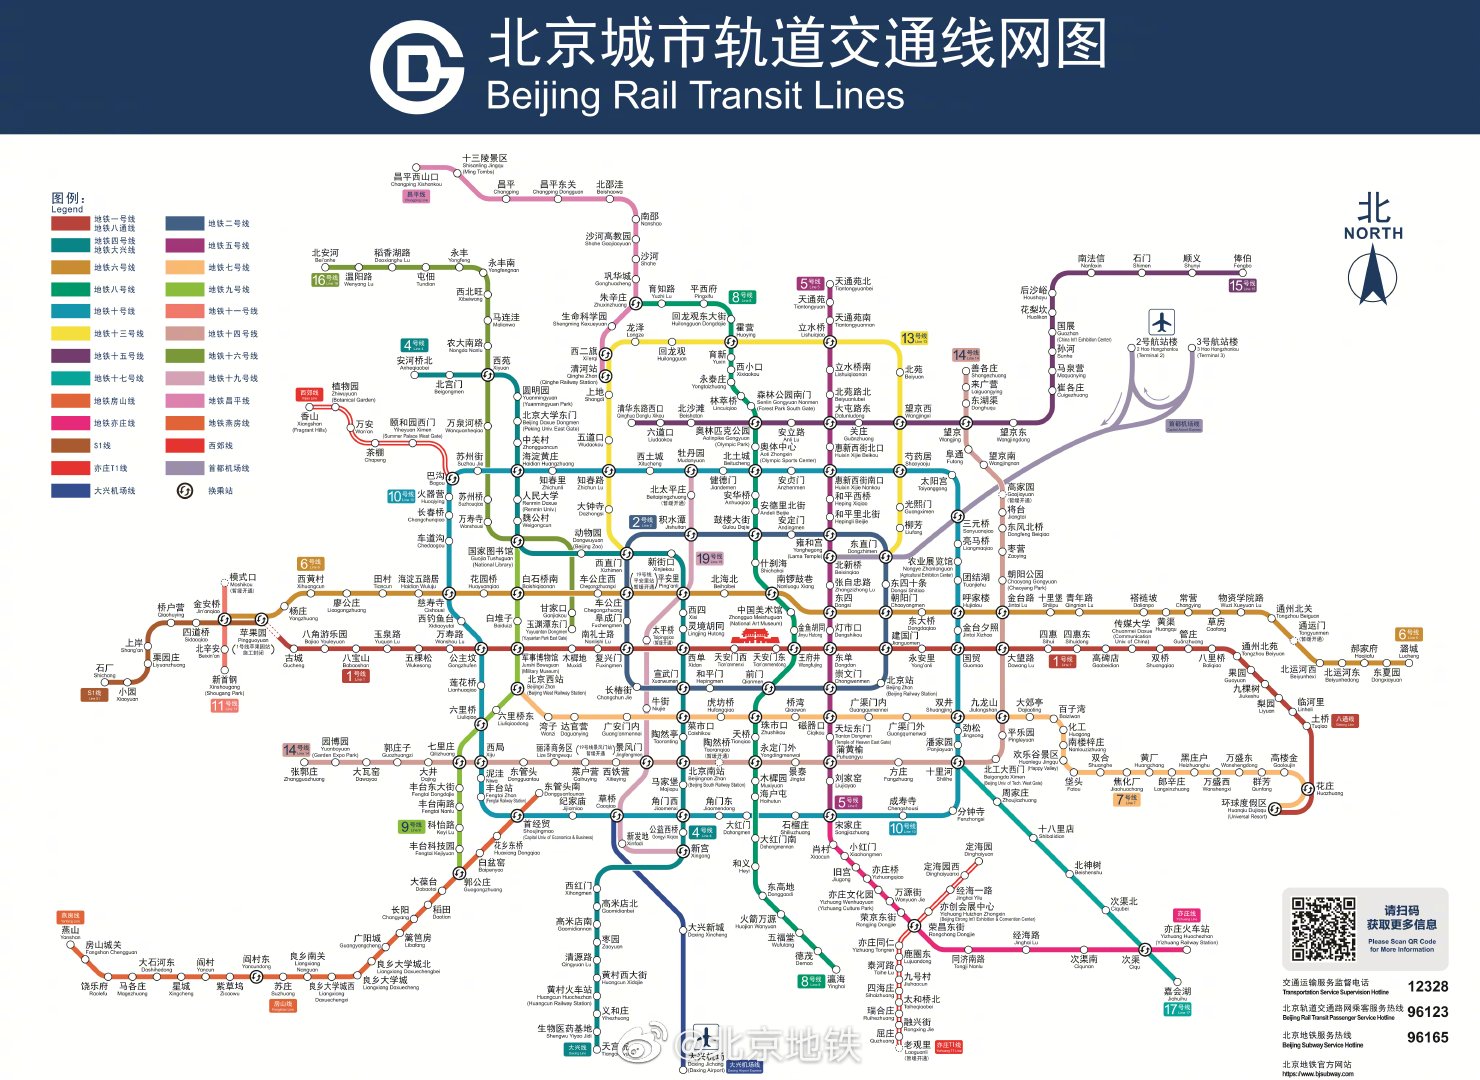 图片来源:北京地铁官方微博据了解,北京此次开通试运营的新线包括:8号